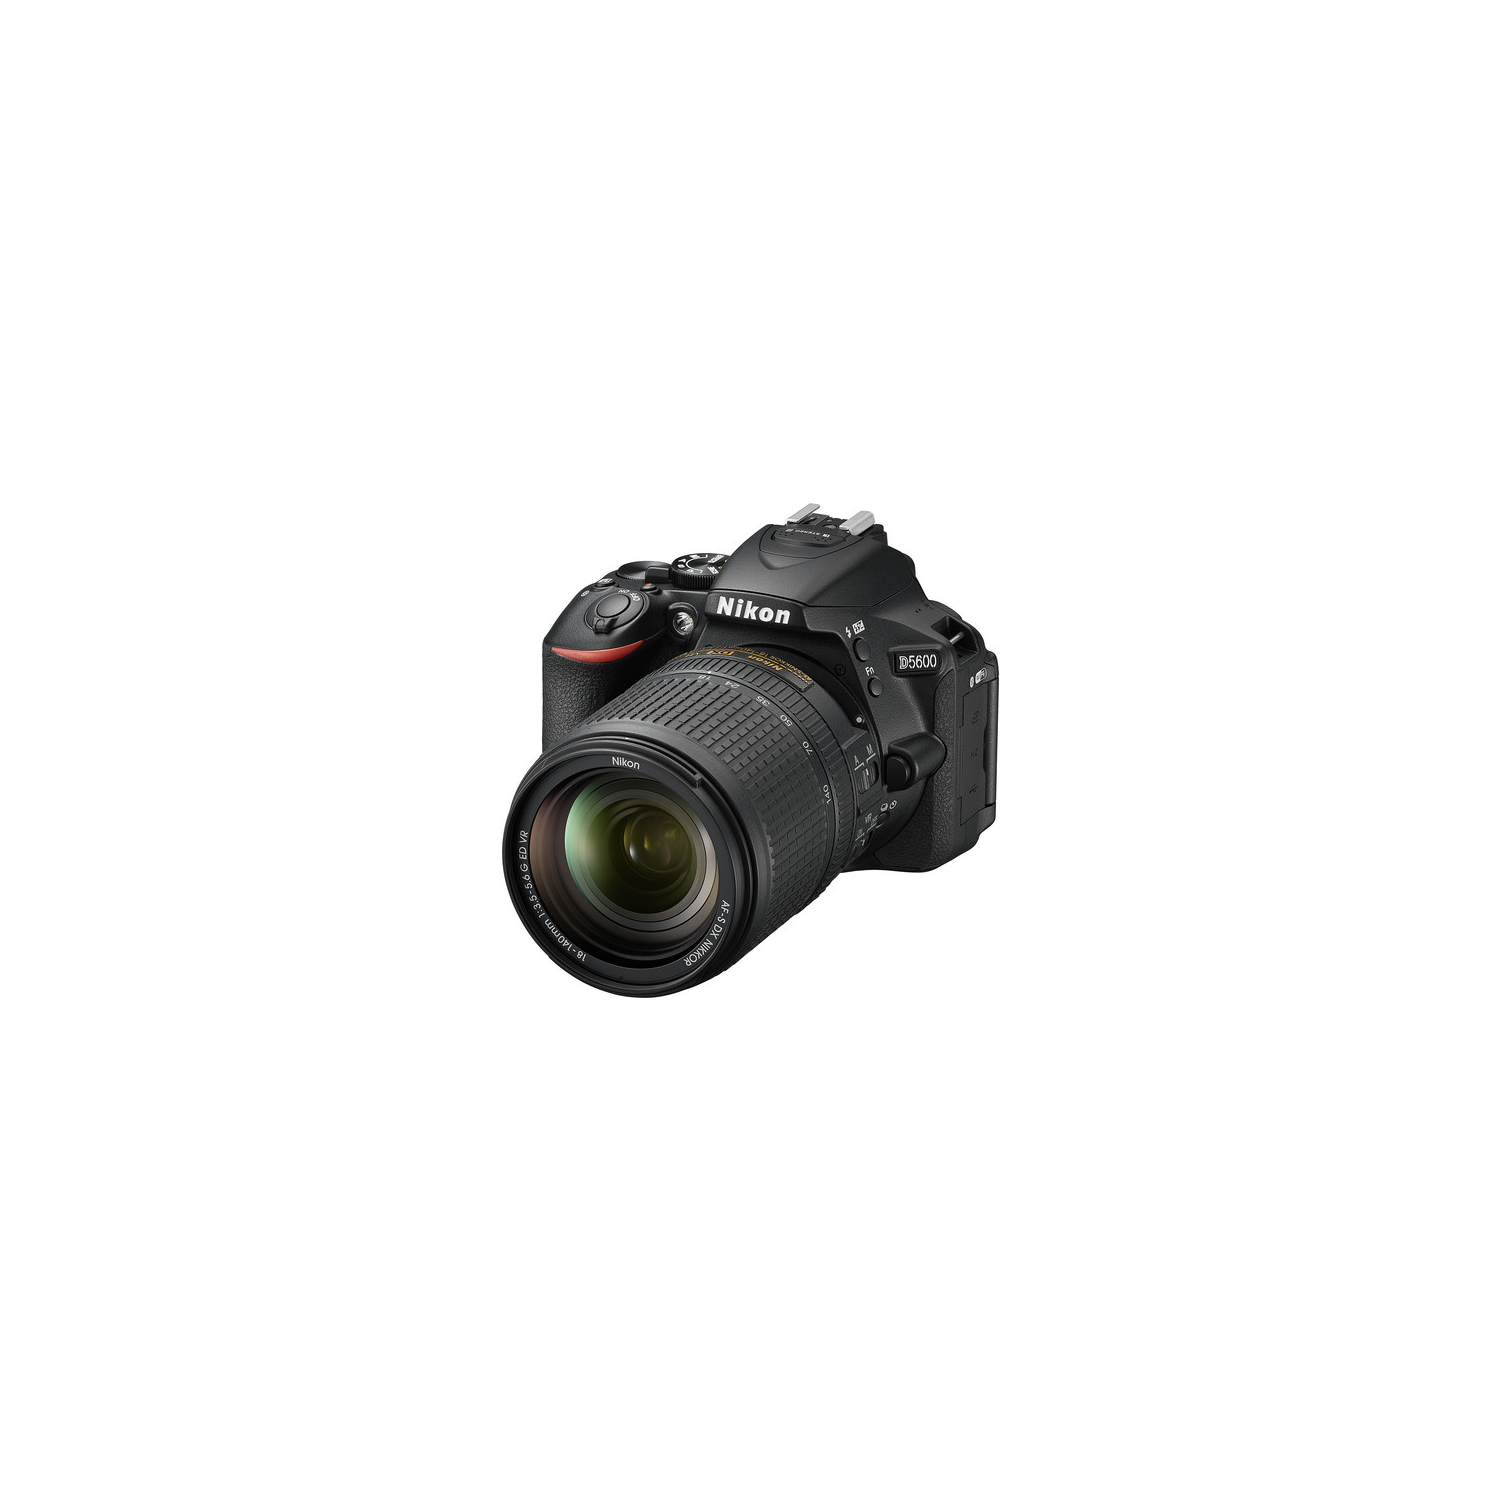 Nikon D5600 DSLR Camera with 18-140mm VR Lens - US Version w/Seller Warranty